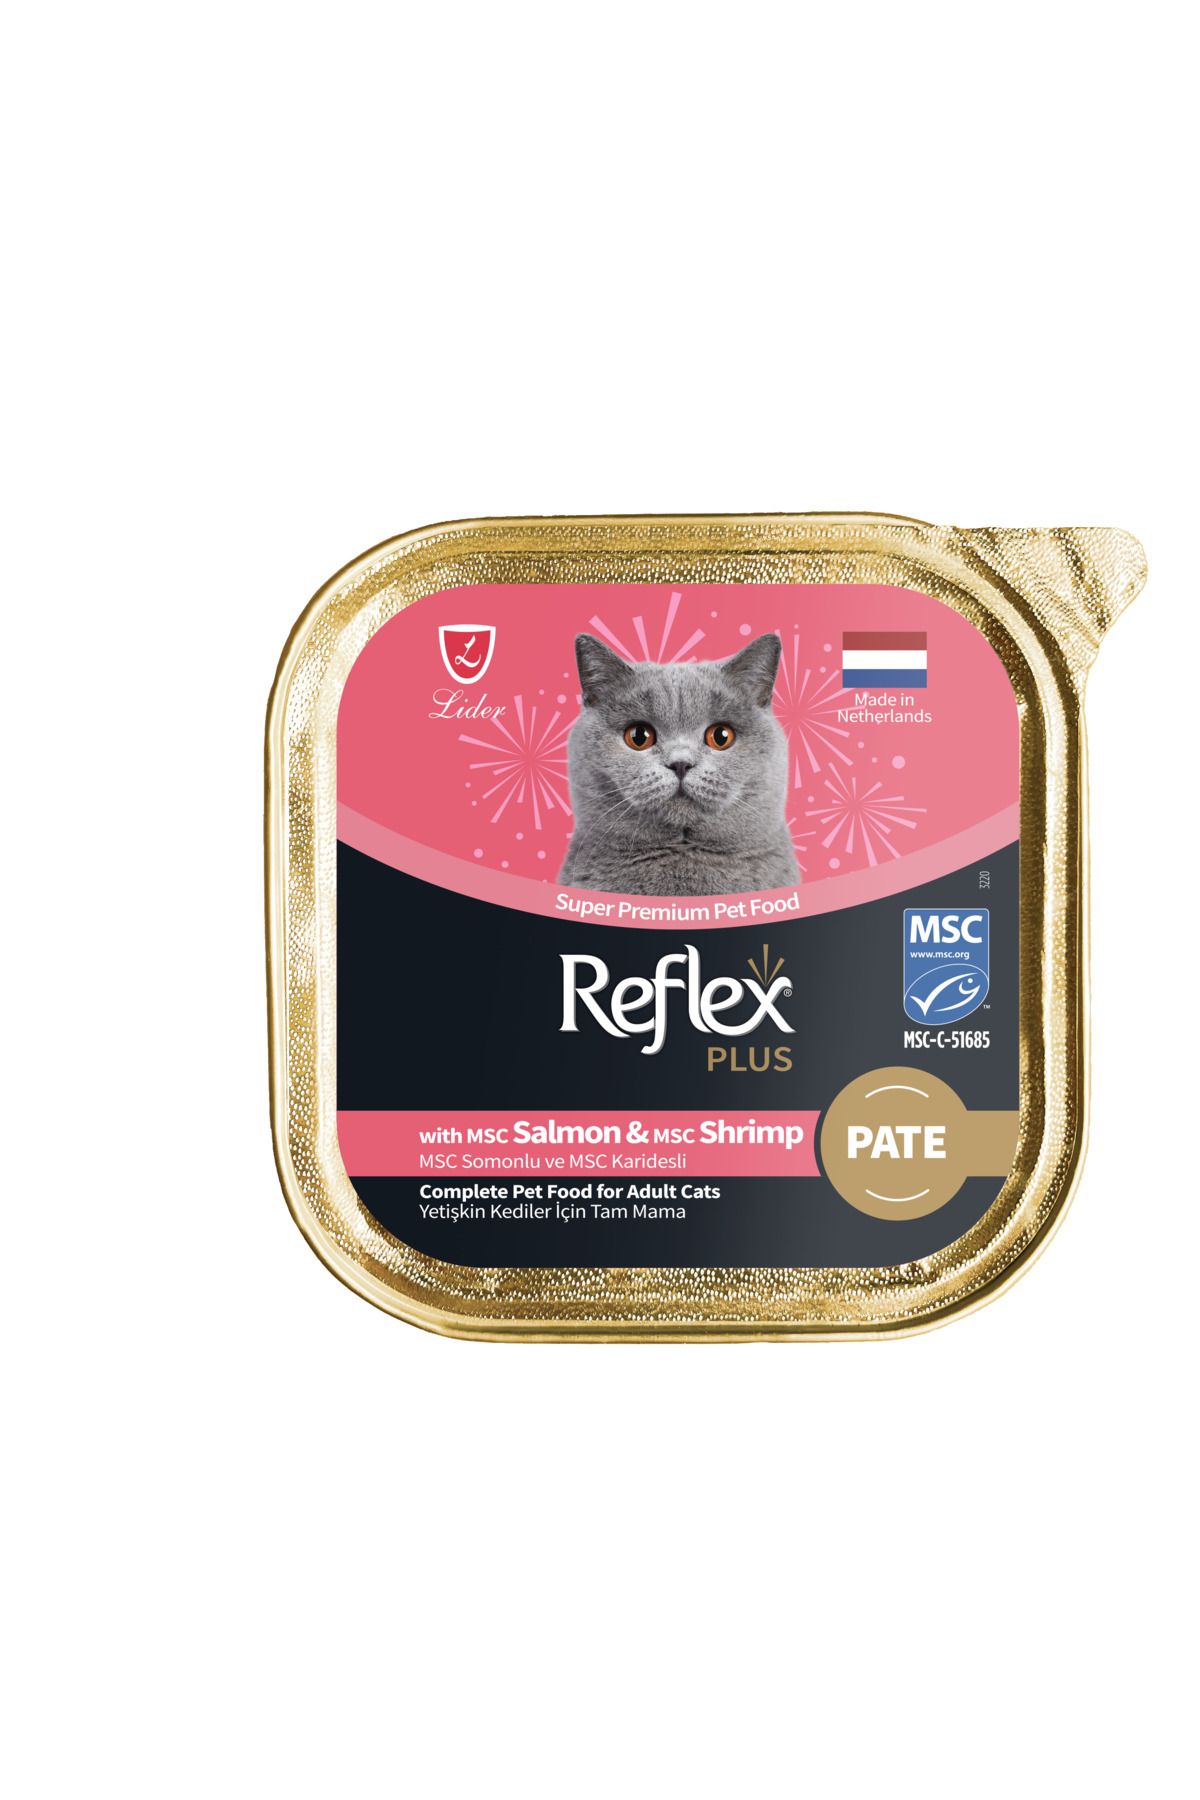 Reflex Plus Alu Tray 85 gr Somon ve Karidesli Kıyılmış Pate Yetişkin Kedi Yaş Mama